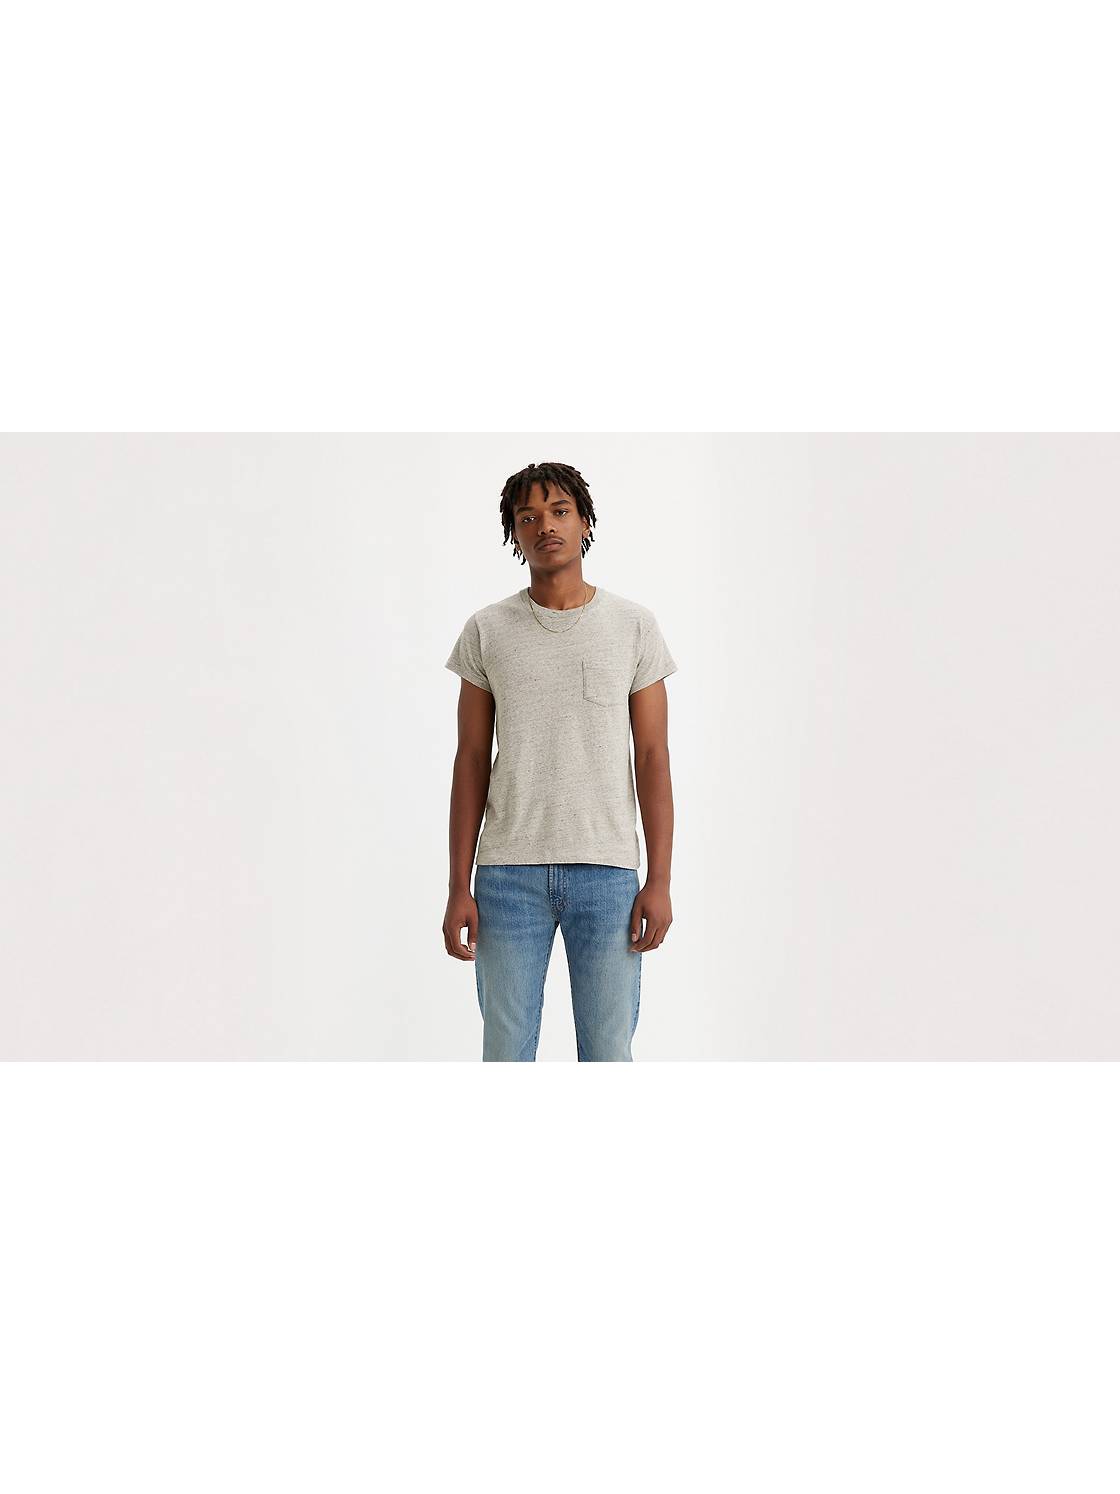 Nouvelle collection tee-shirt Levi's homme à Nîmes - Jeans Center